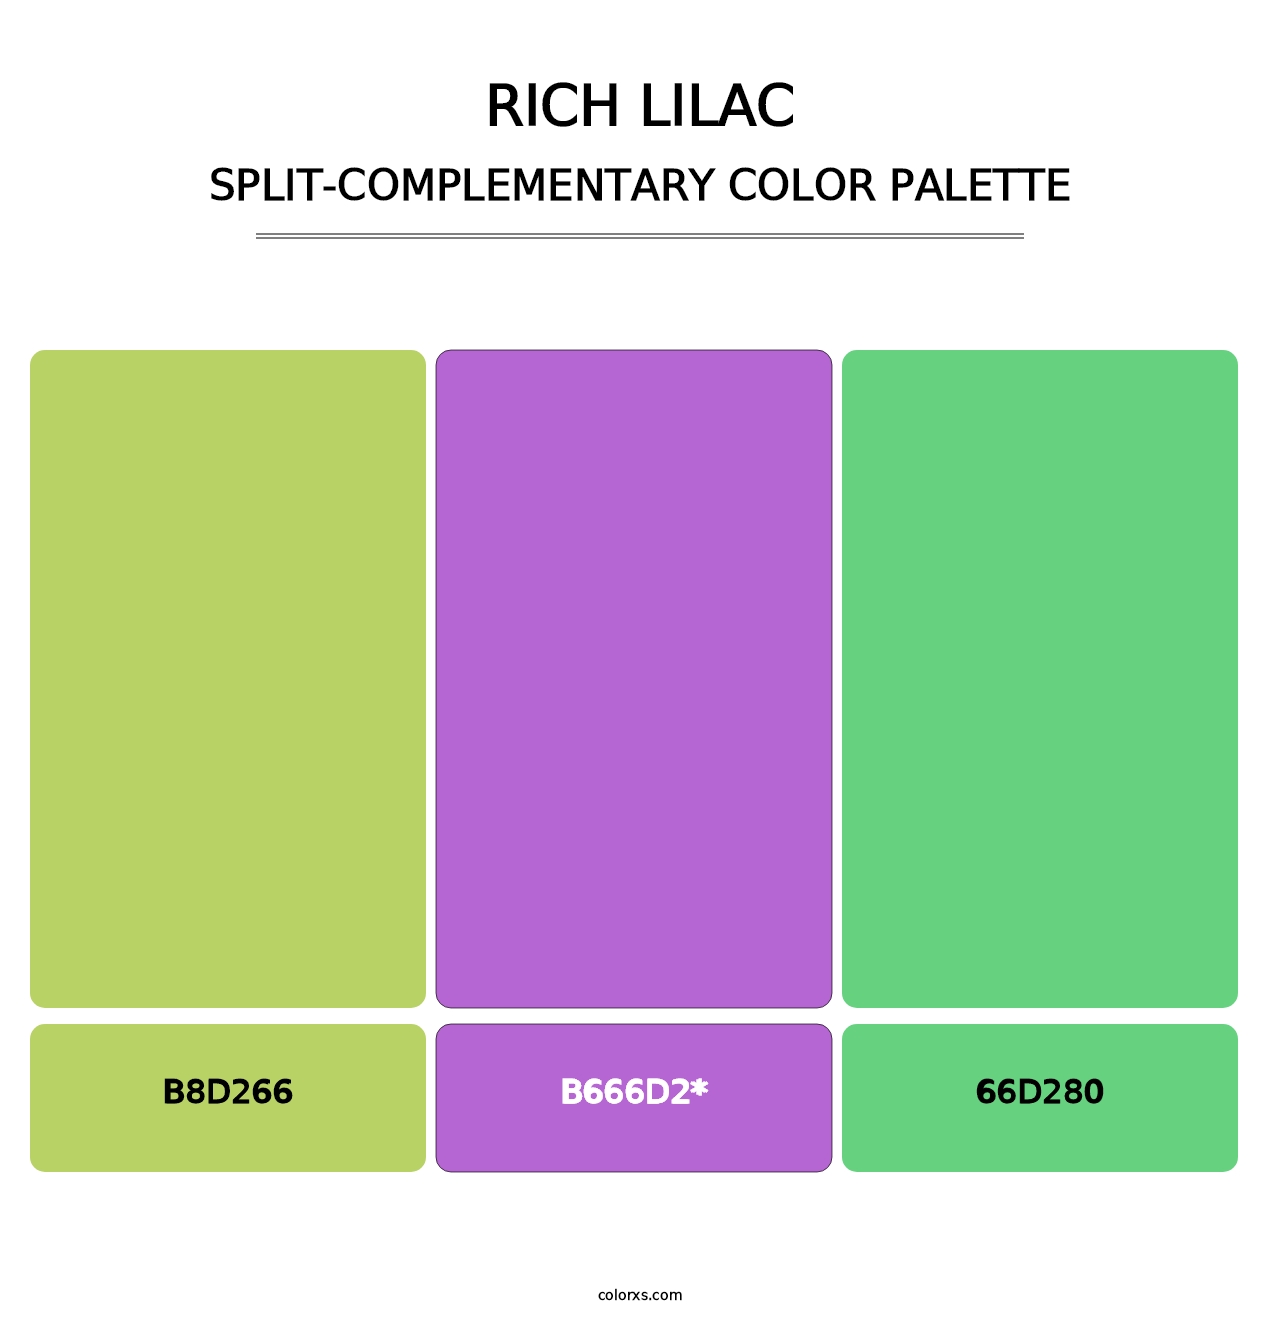 Rich Lilac - Split-Complementary Color Palette